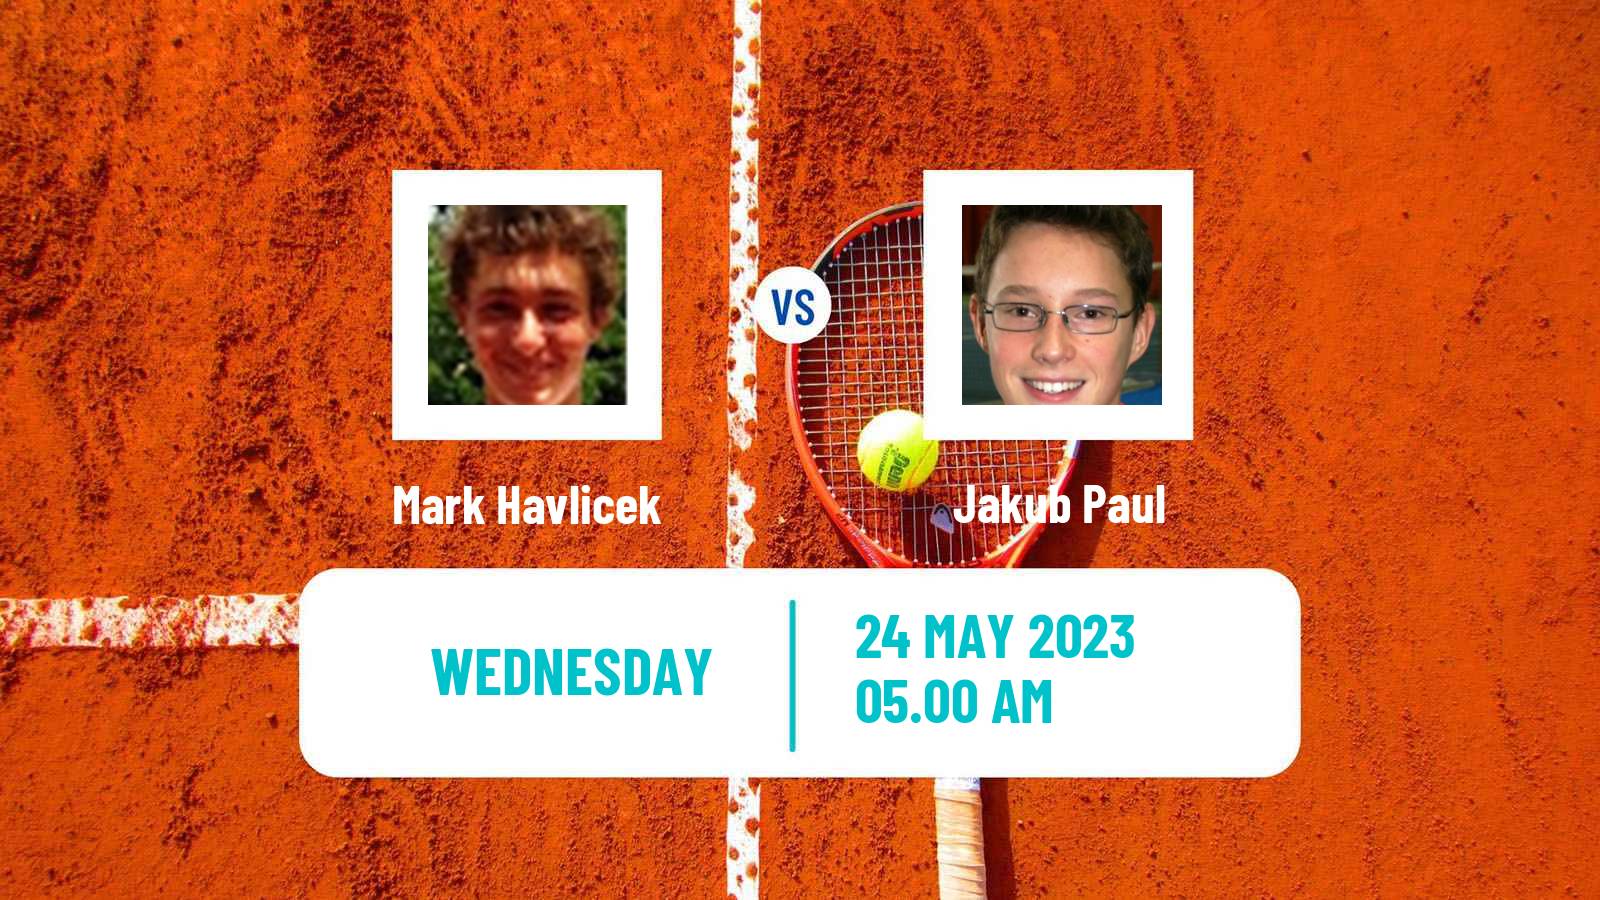 Tennis ITF M25 Most Men Mark Havlicek - Jakub Paul